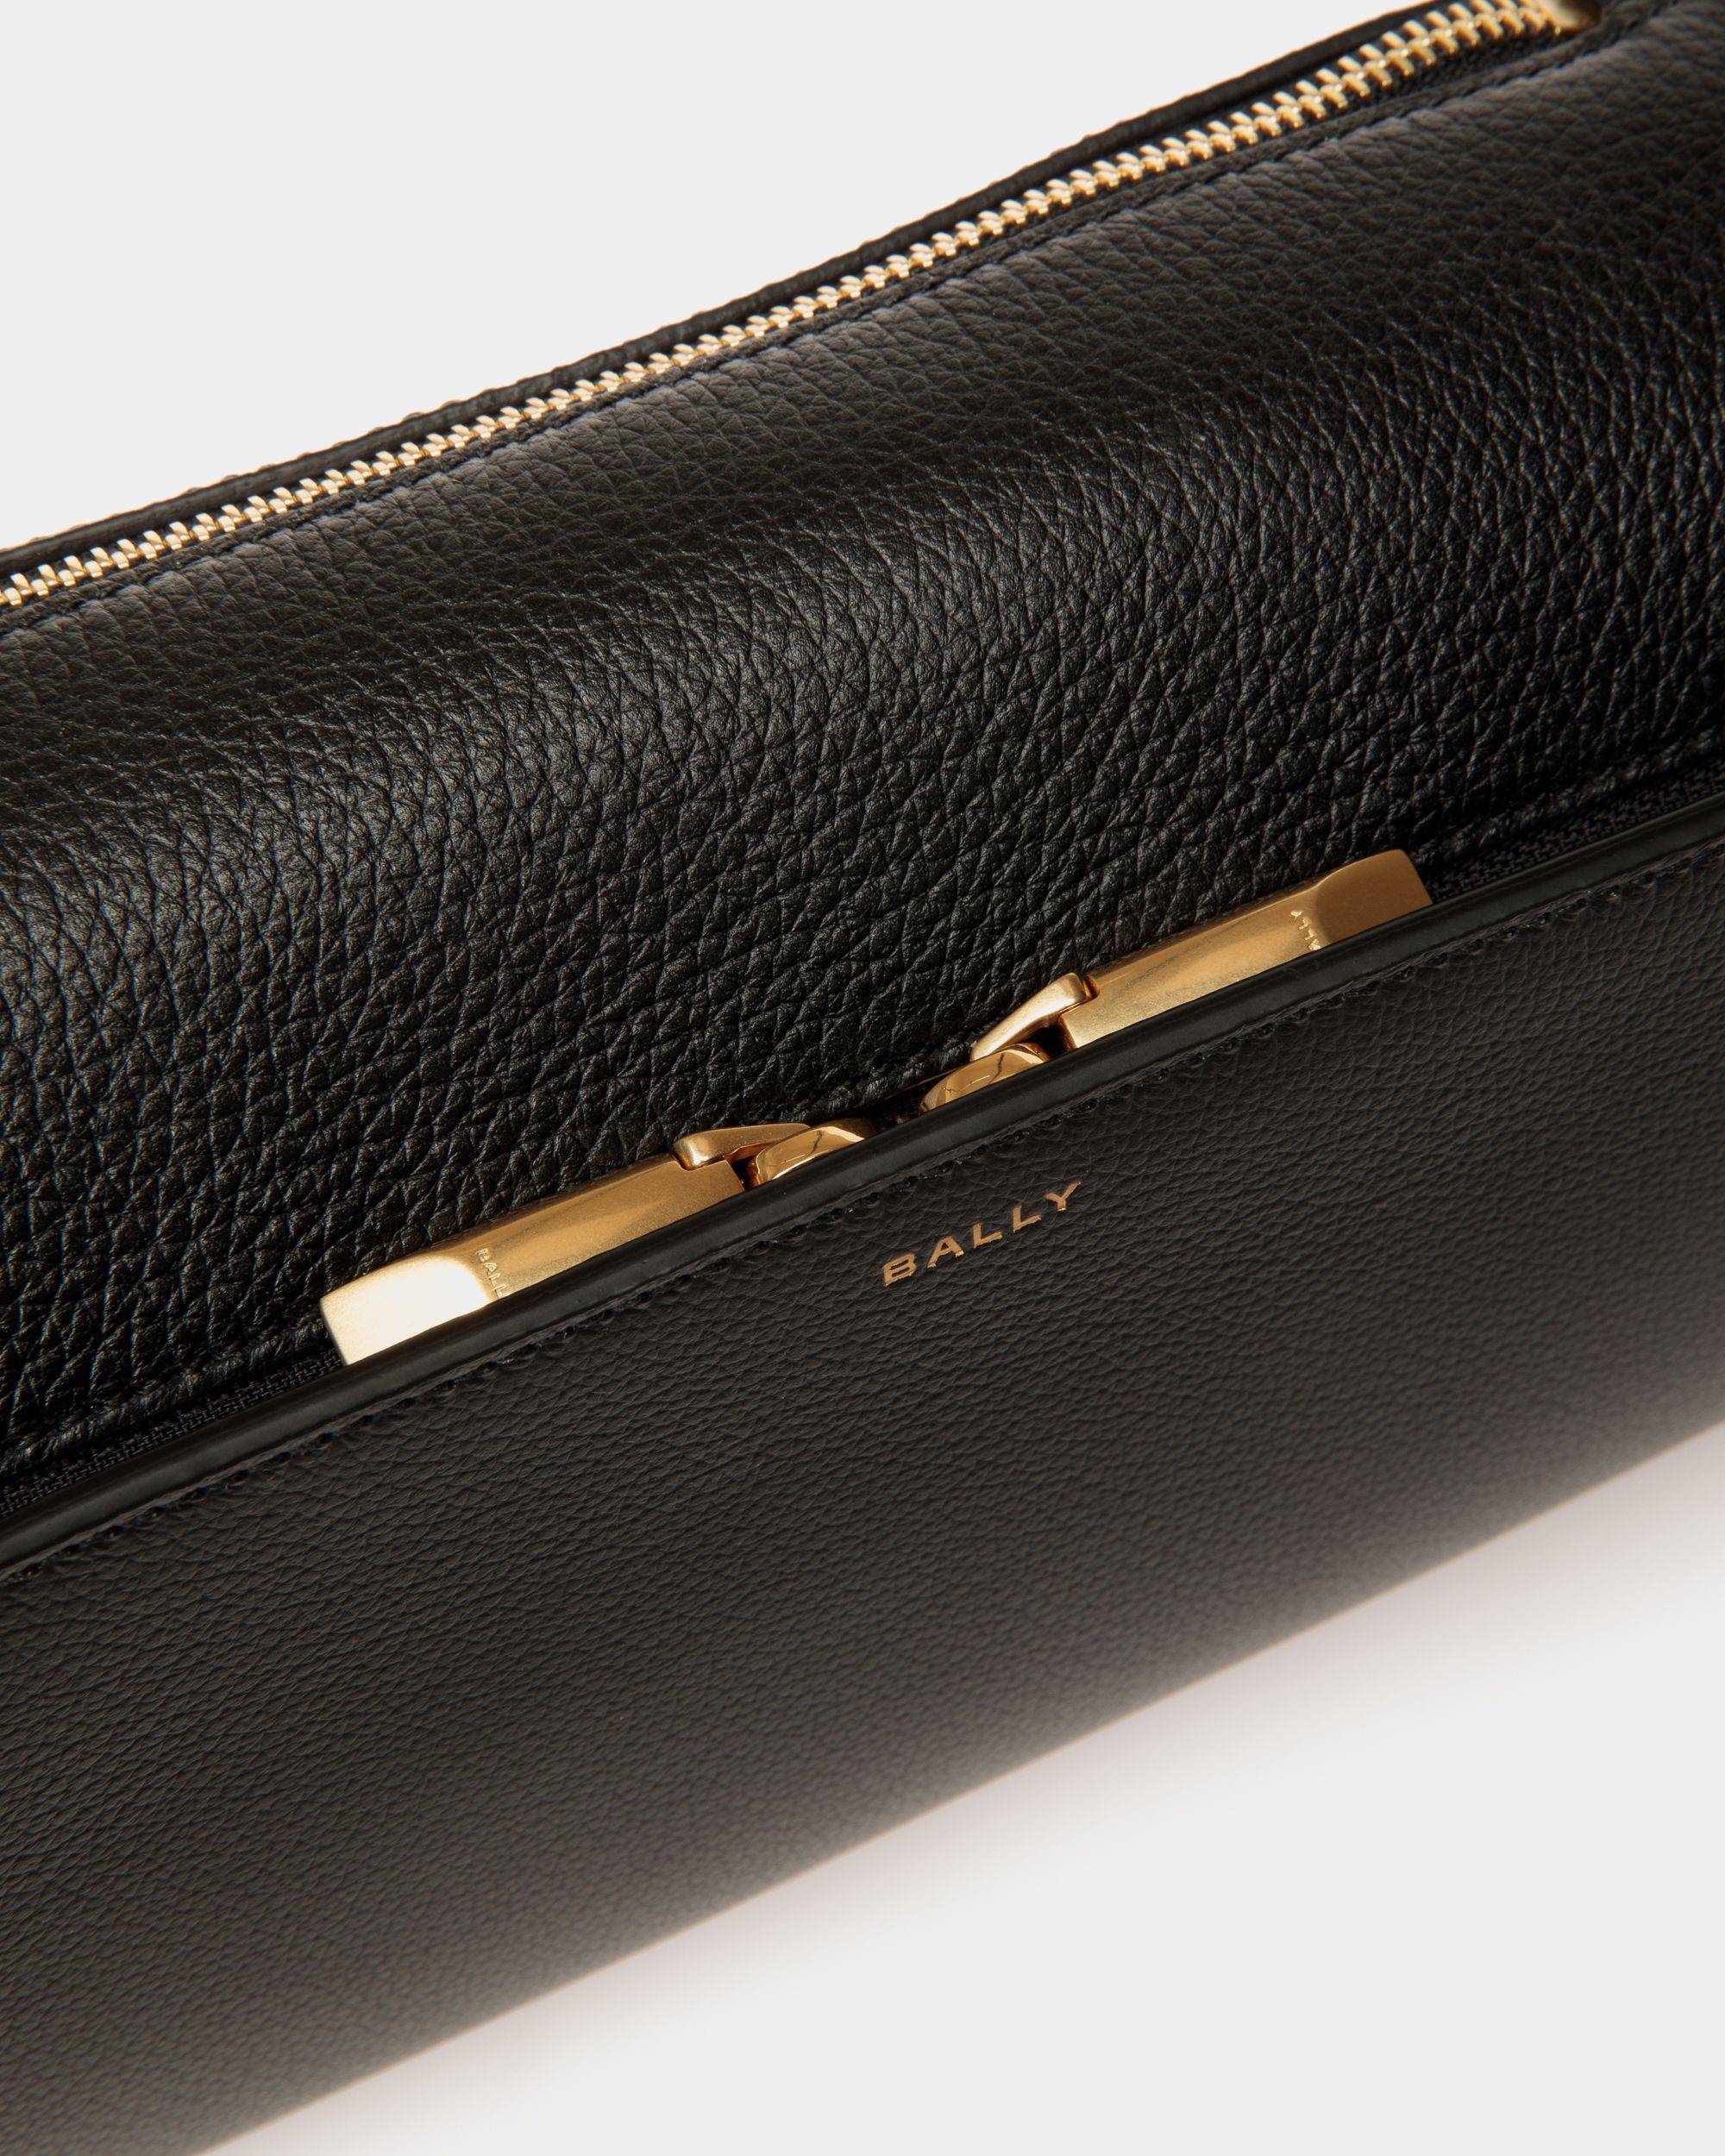 Arkle | Men's Belt Bag in Black Grained Leather | Bally | Still Life Detail